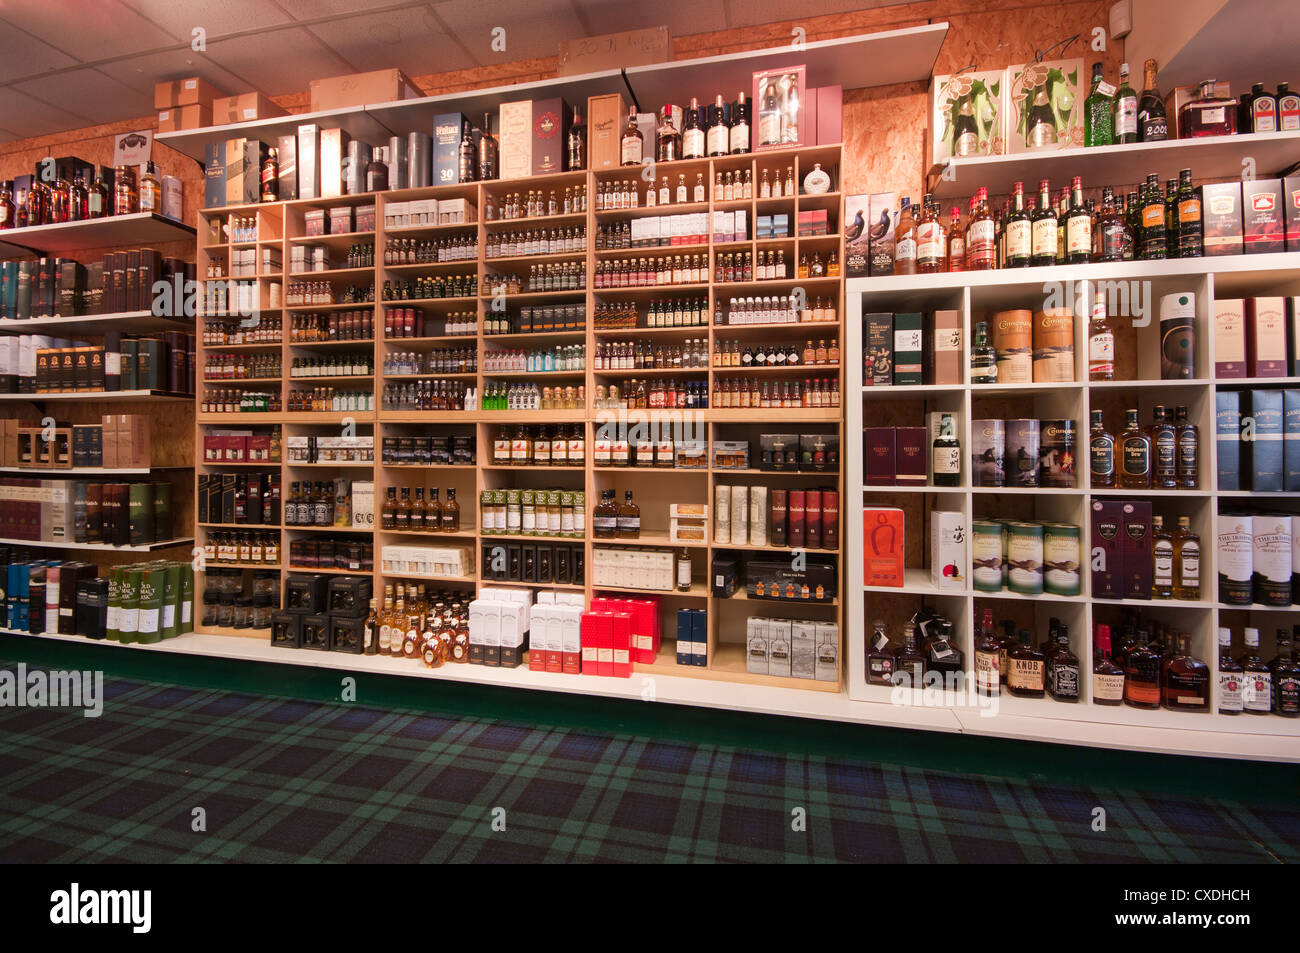 Innen ein Whisky-Whisky Shop Geschäfte Schottland Stockfotografie - Alamy